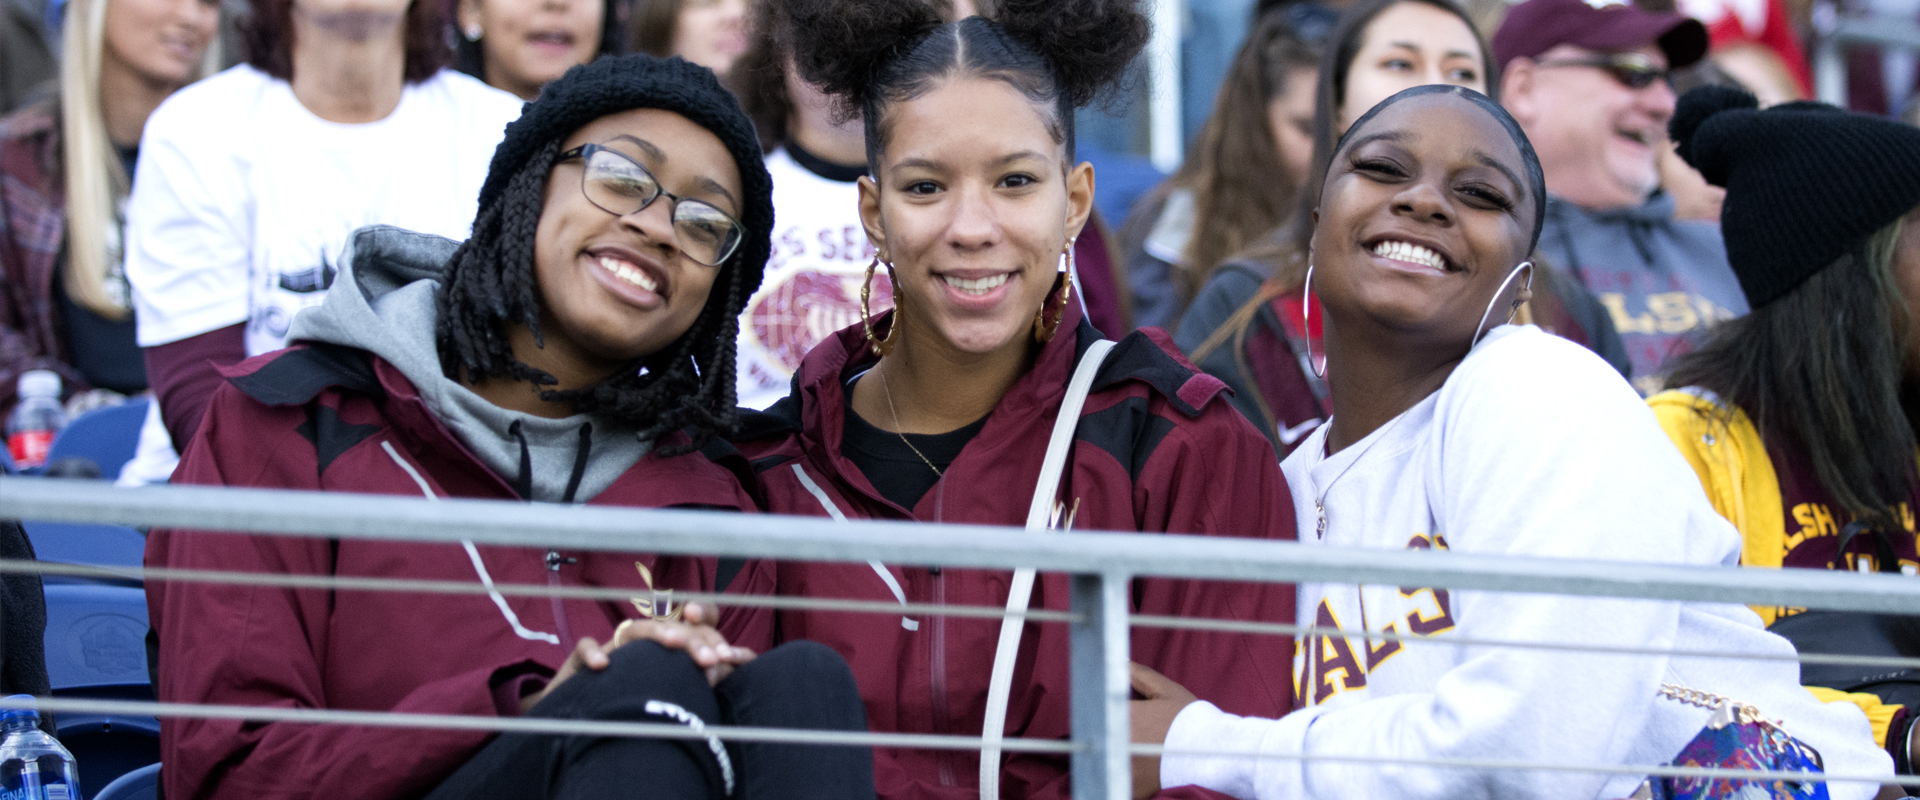 photo of Walsh students at football game